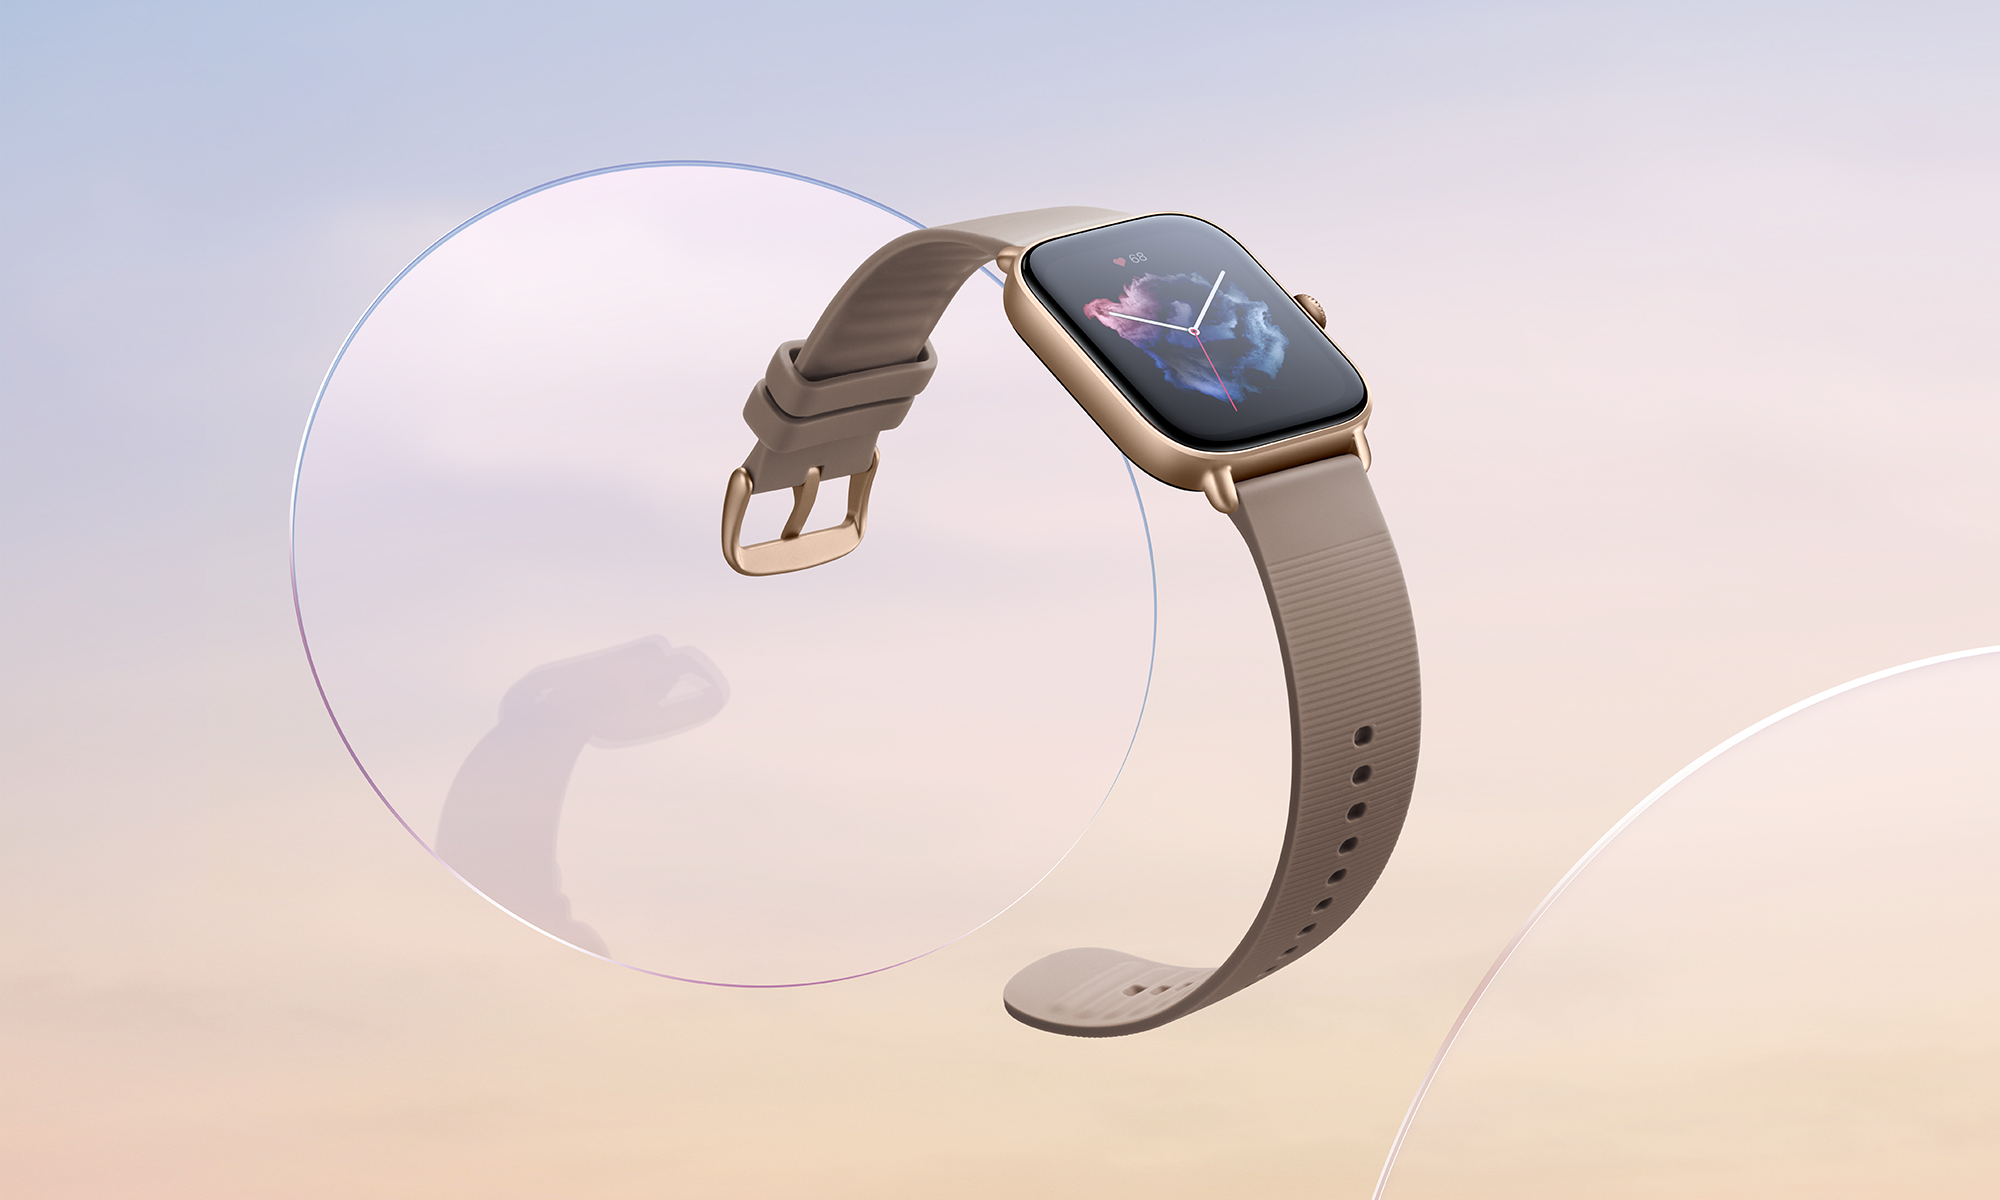 Relógio Smartwatch Amazfit GTS 3 A2035